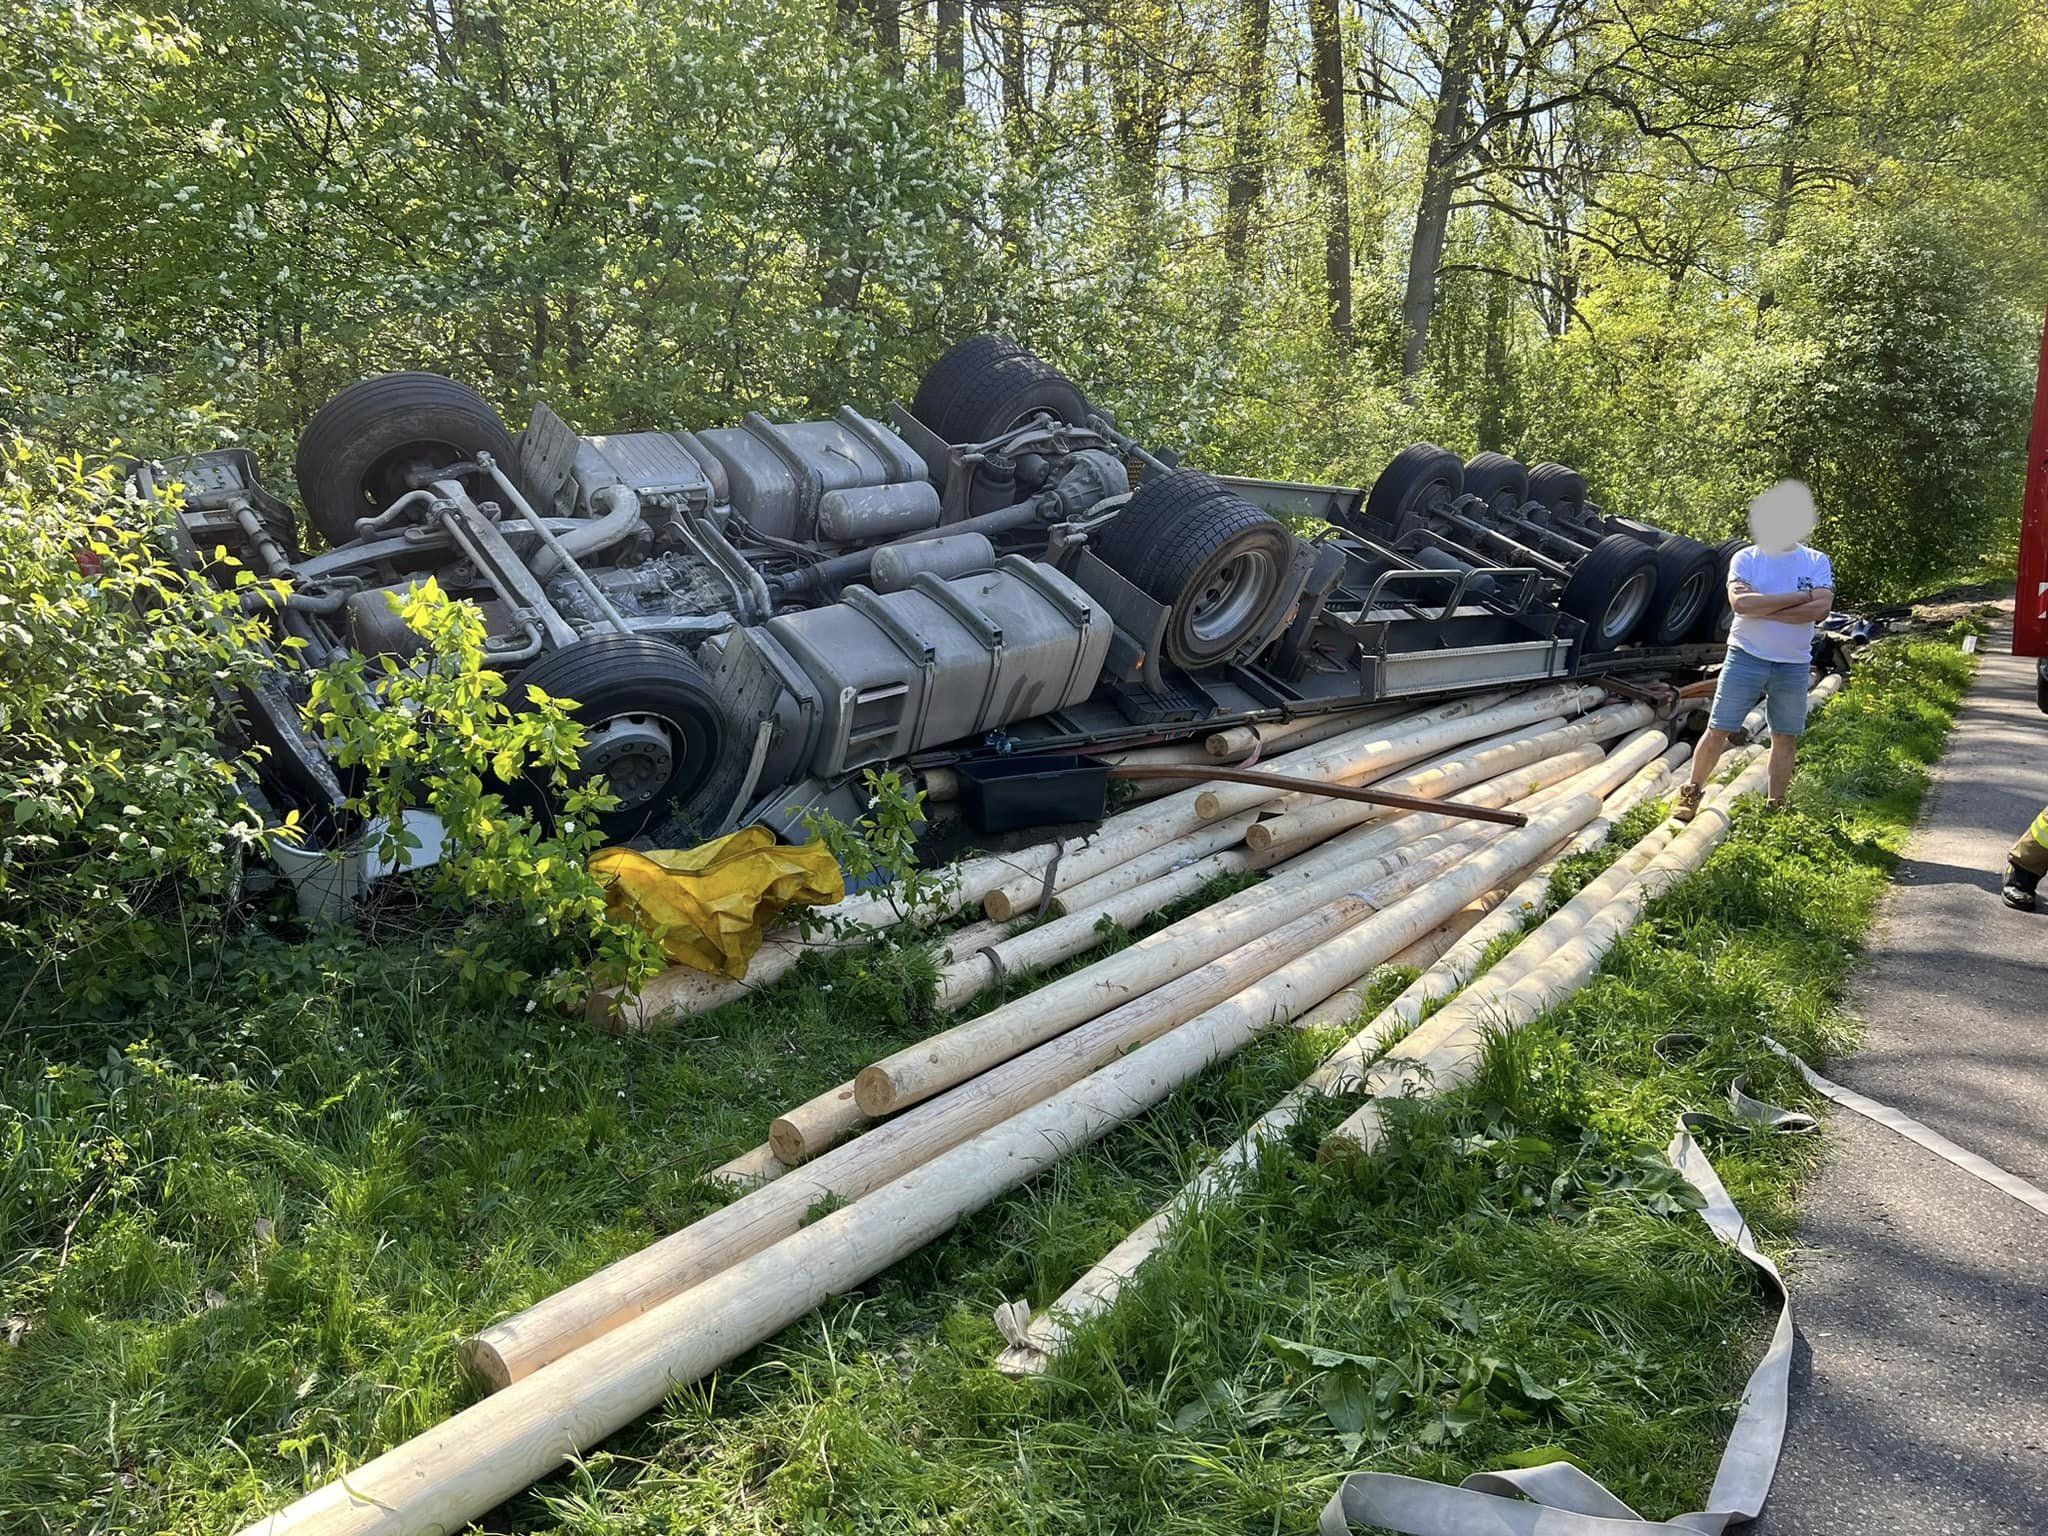 Kierowca ciężarówki cudem ocalał z potwornego zderzenia wypadek Galerie, Olsztyn